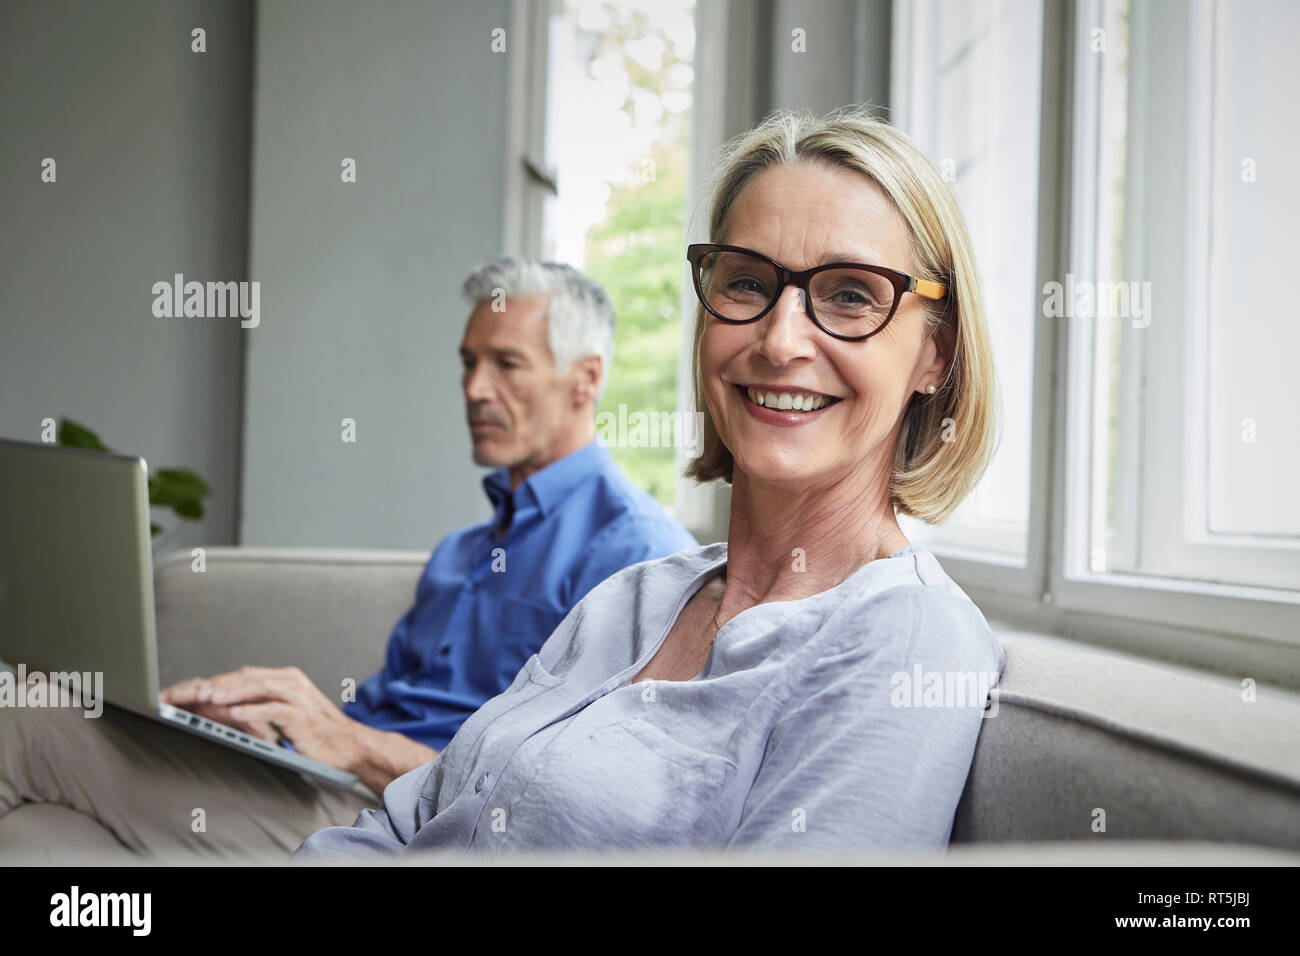 Ritratto di sorridere donna matura sul lettino con uomo in background utilizzando tablet Foto Stock